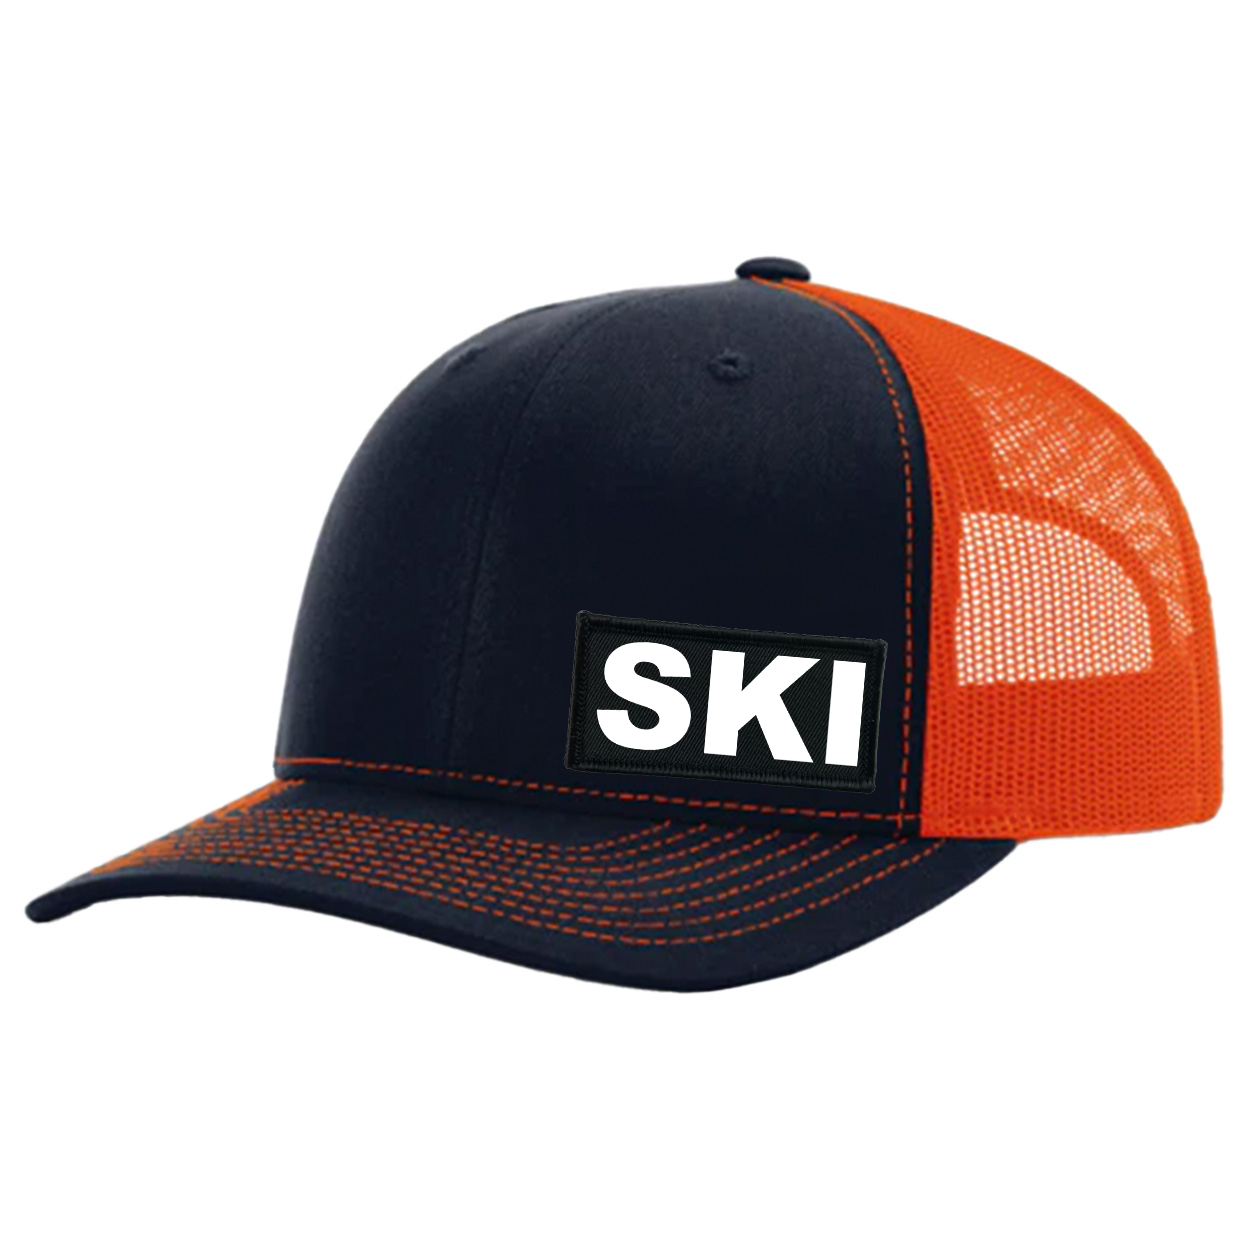 Ski Brand Logo Night Out Woven Patch Snapback Trucker Hat Dark Navy/Orange (White Logo)